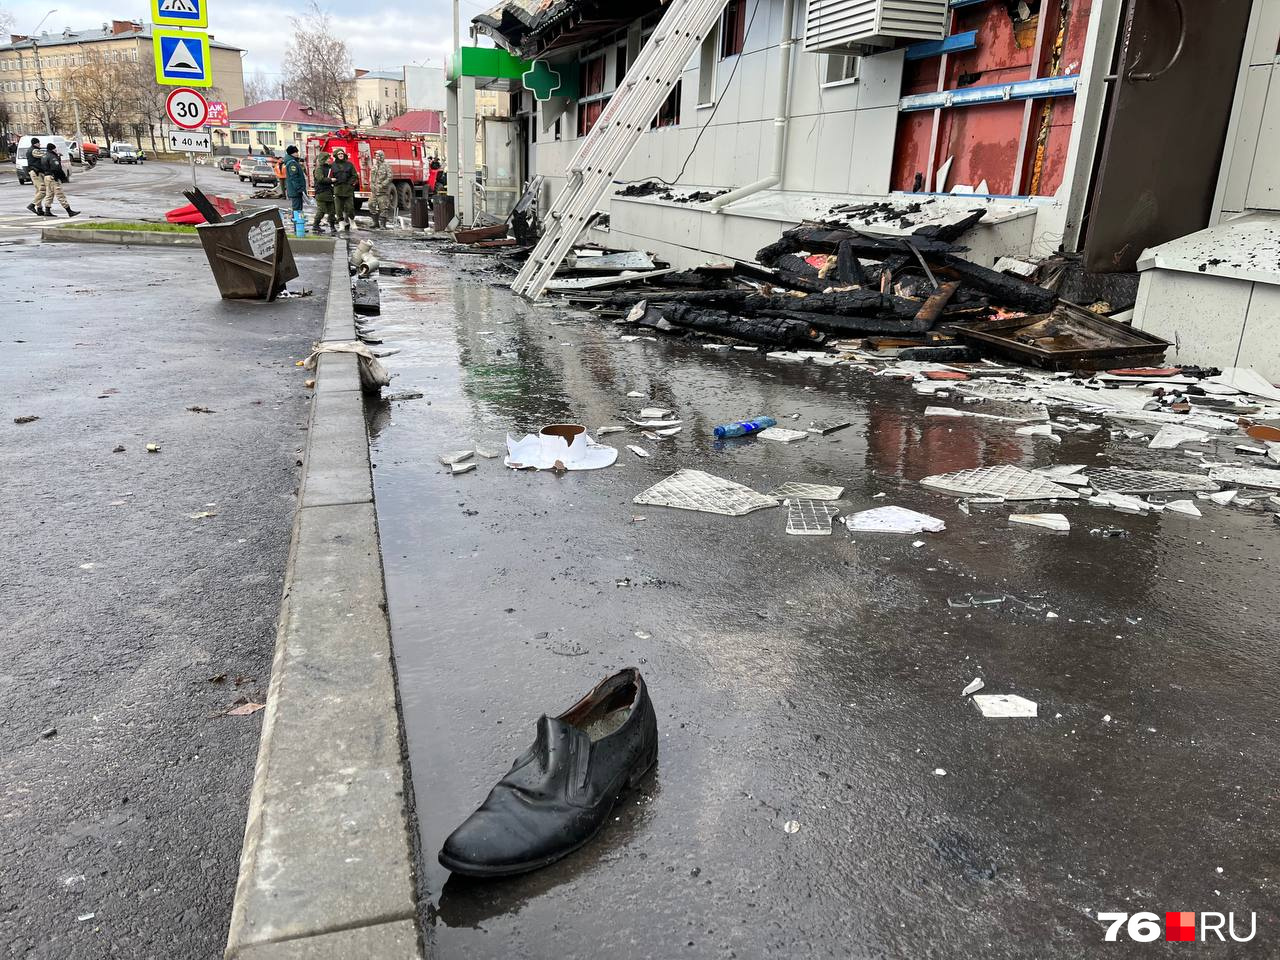 Окровавленный ботинок остался лежать на асфальте у сгоревшего клуба